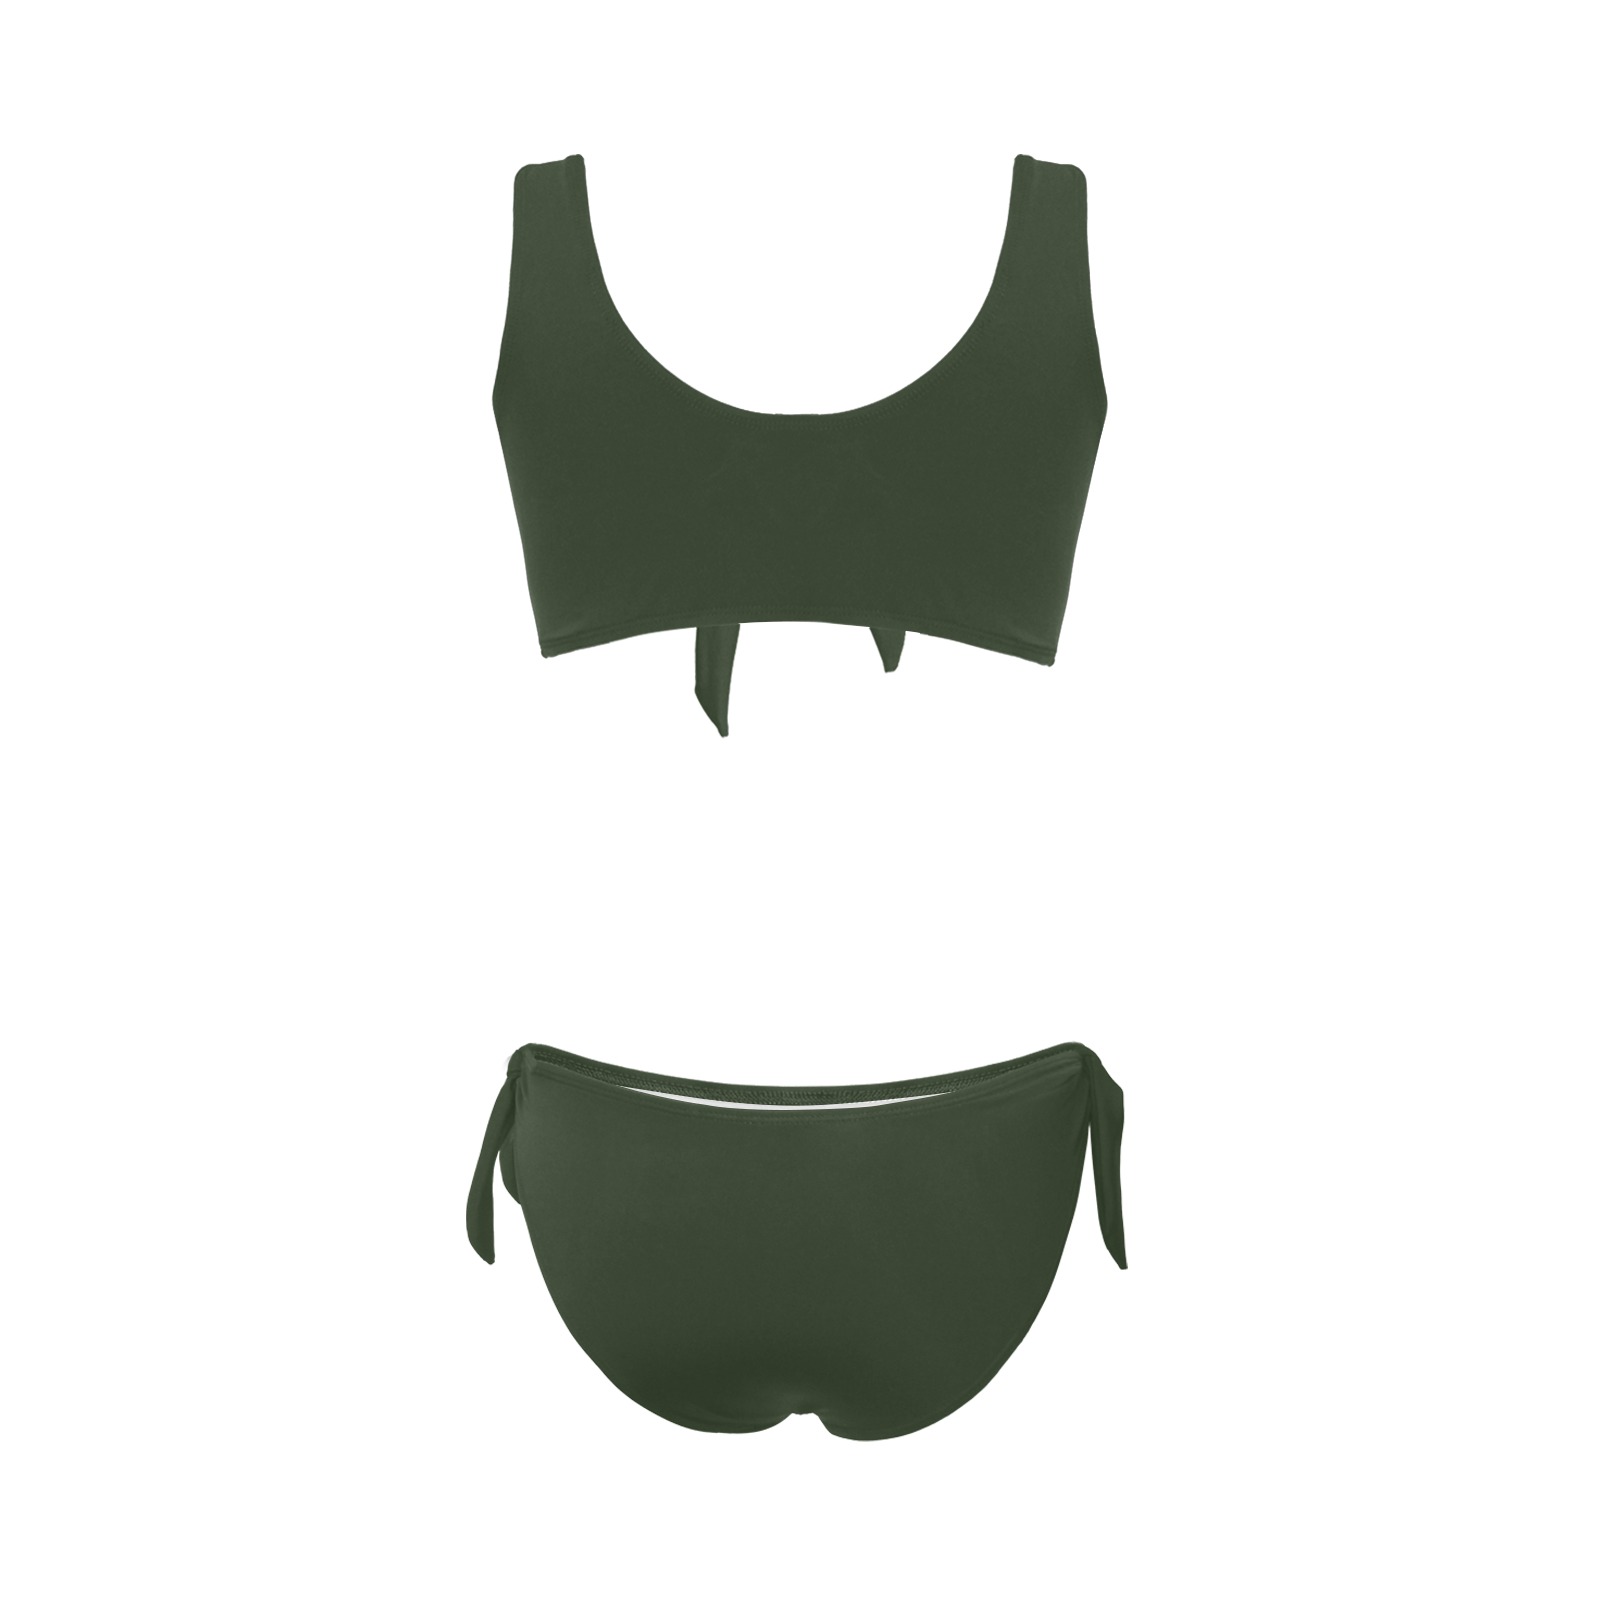 Daisy Woman's Swimwear Green Plain Bow Tie Front Bikini Swimsuit (Model S38)